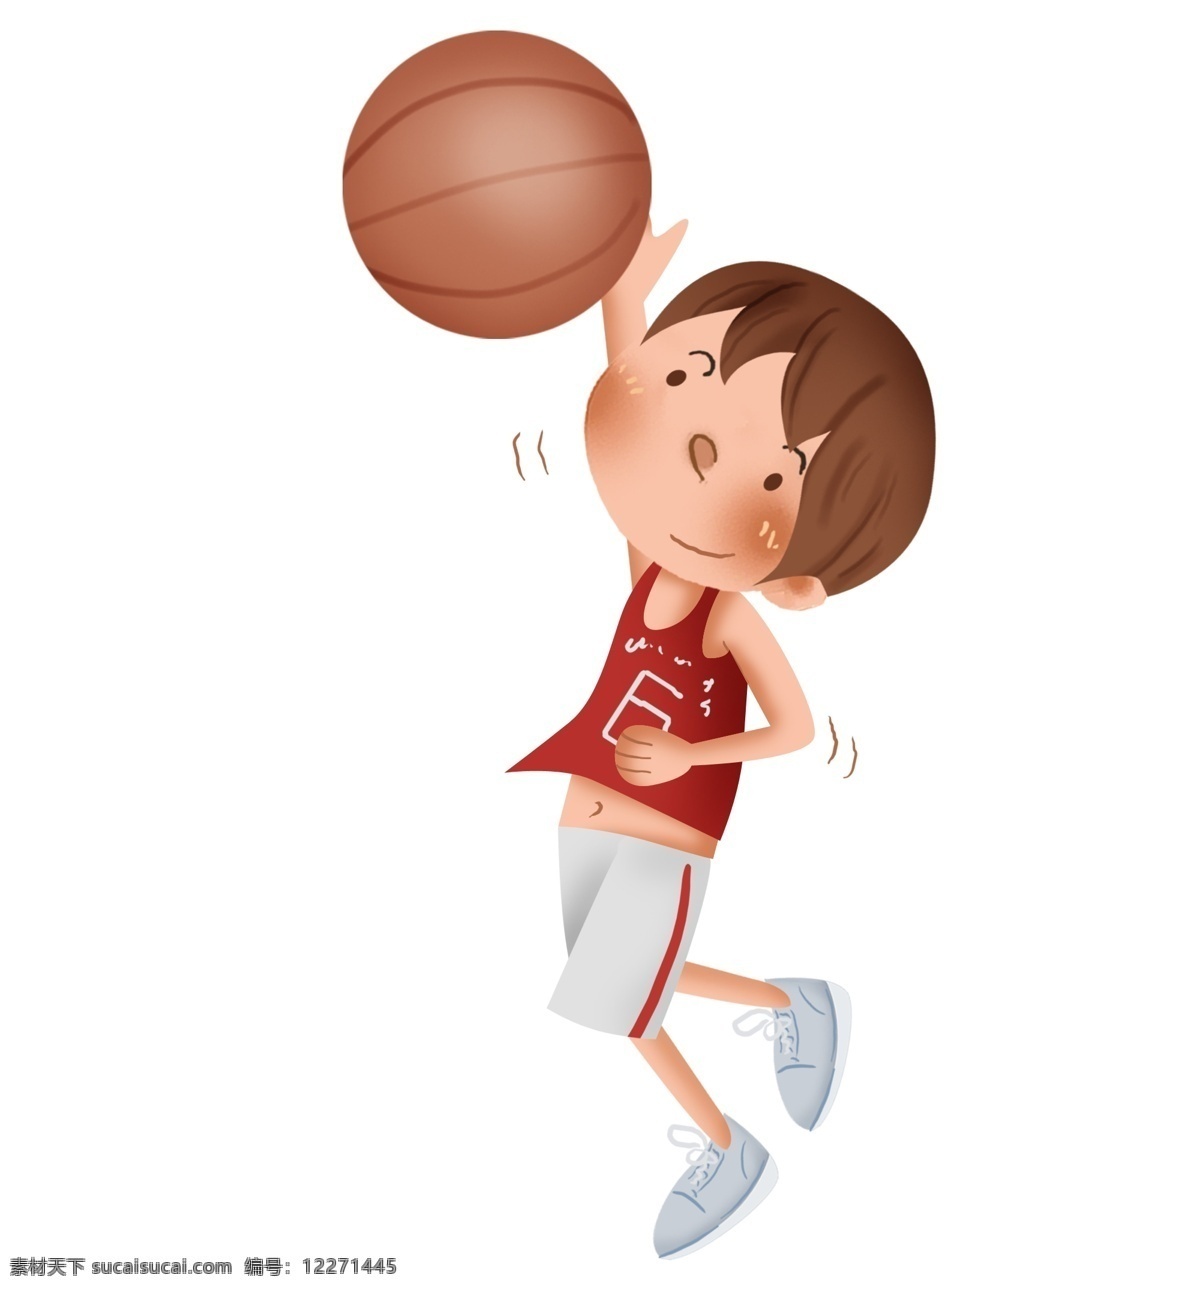 儿童 体育 比赛 扣篮 男孩 运动会 青少年 课外活动 篮球考试 校园篮球赛 篮球比赛 篮球 运动 学习篮球 投篮